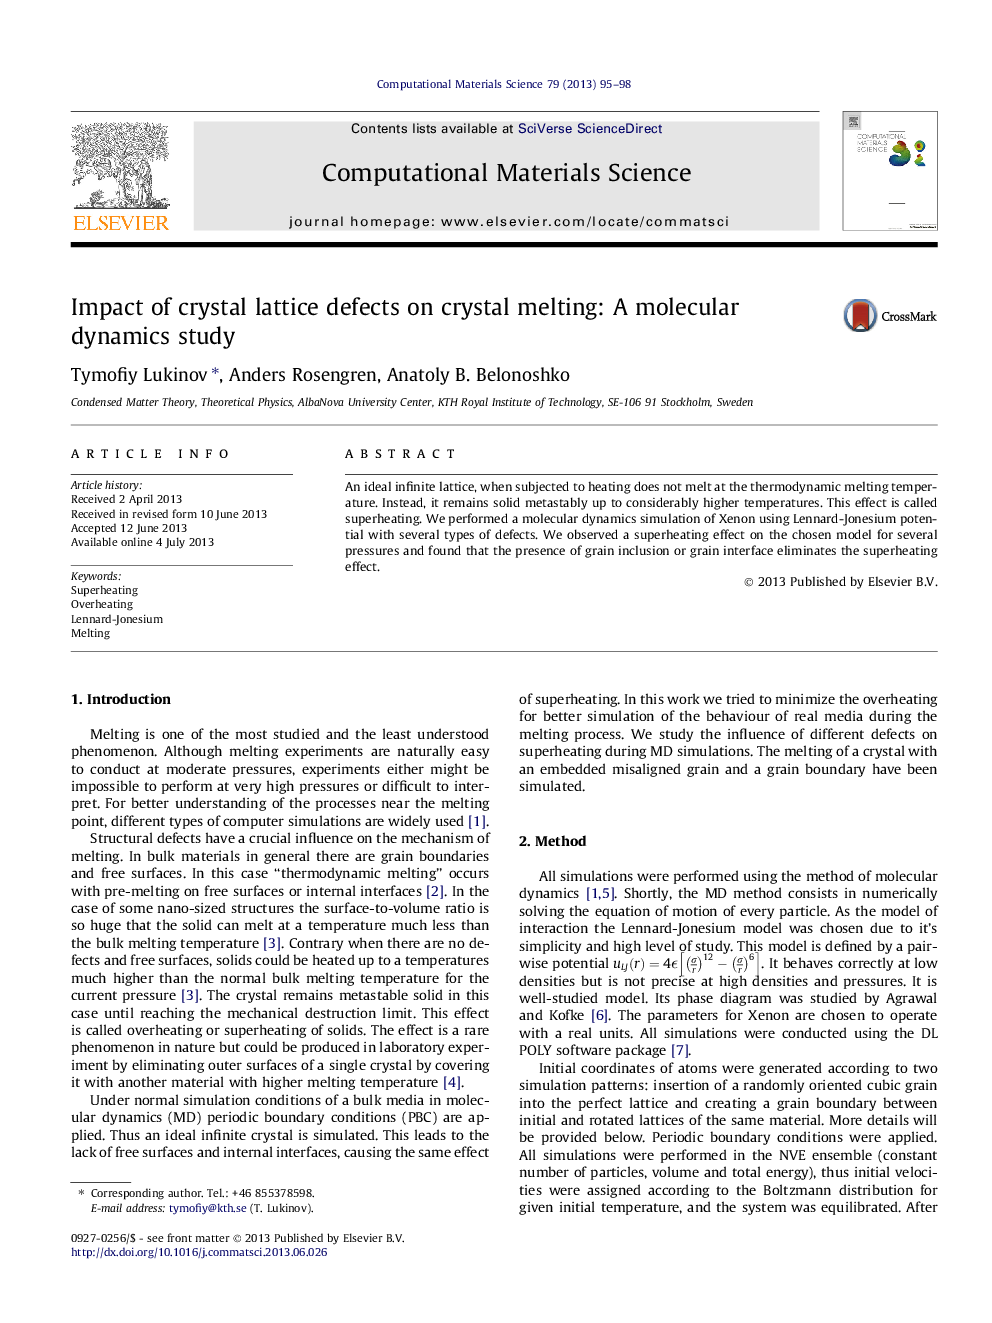 اثر نقایص شبکه های کریستال در ذوب کریستال: مطالعه دینامیک مولکولی 